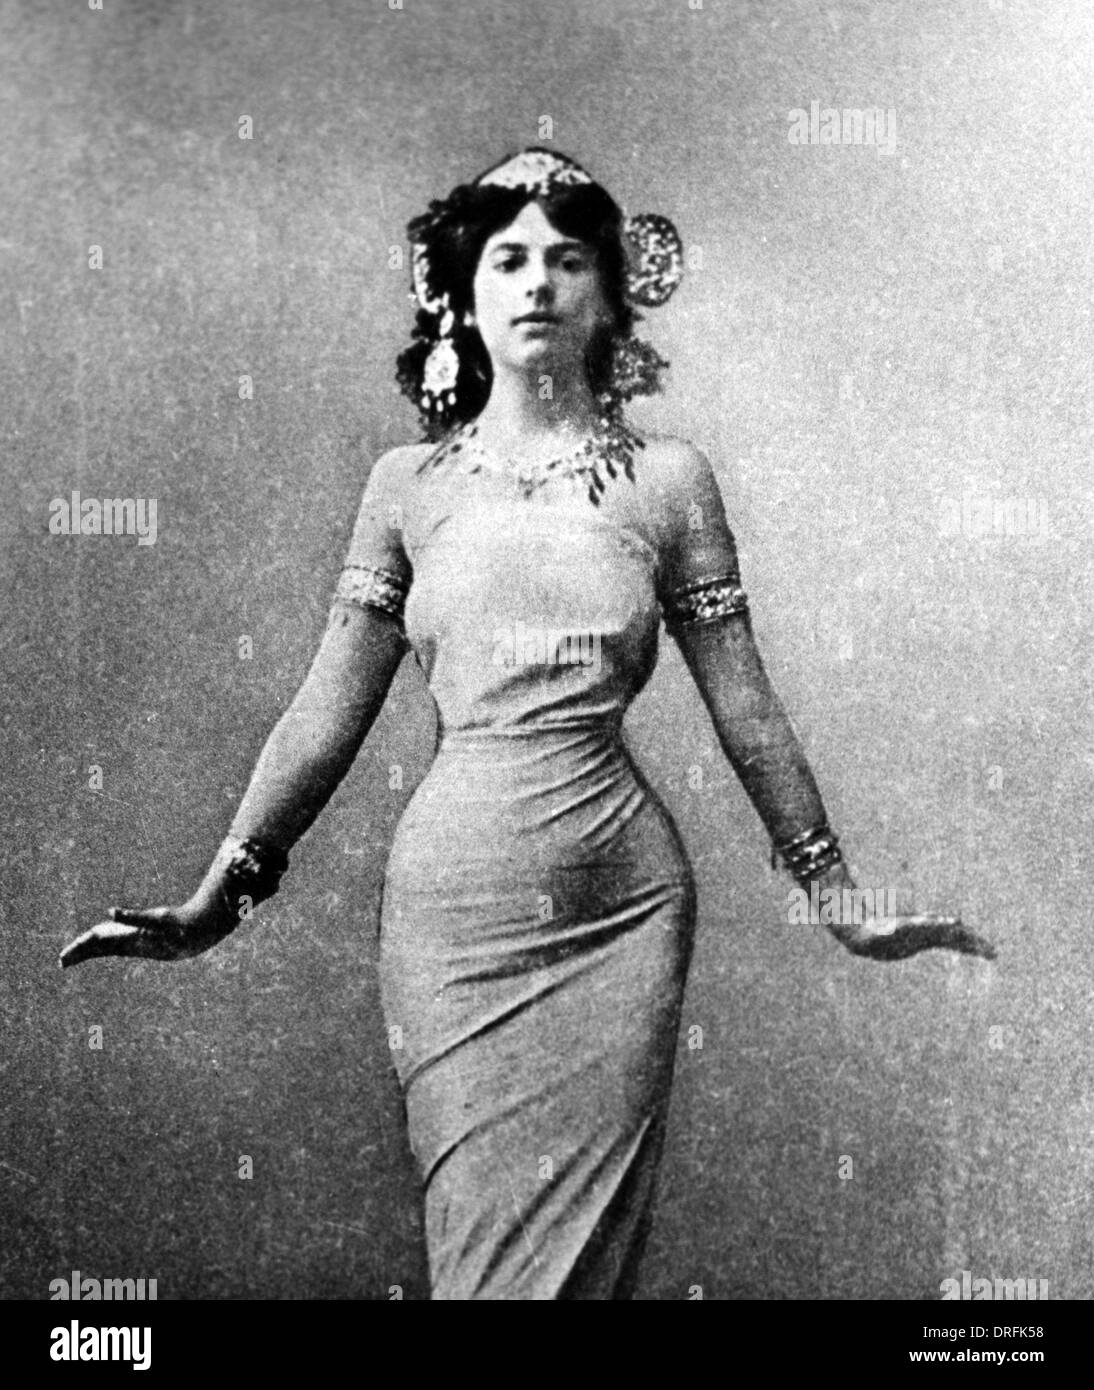 Mata Hari, dancer, courtesan and possible spy Stock Photo - Alamy